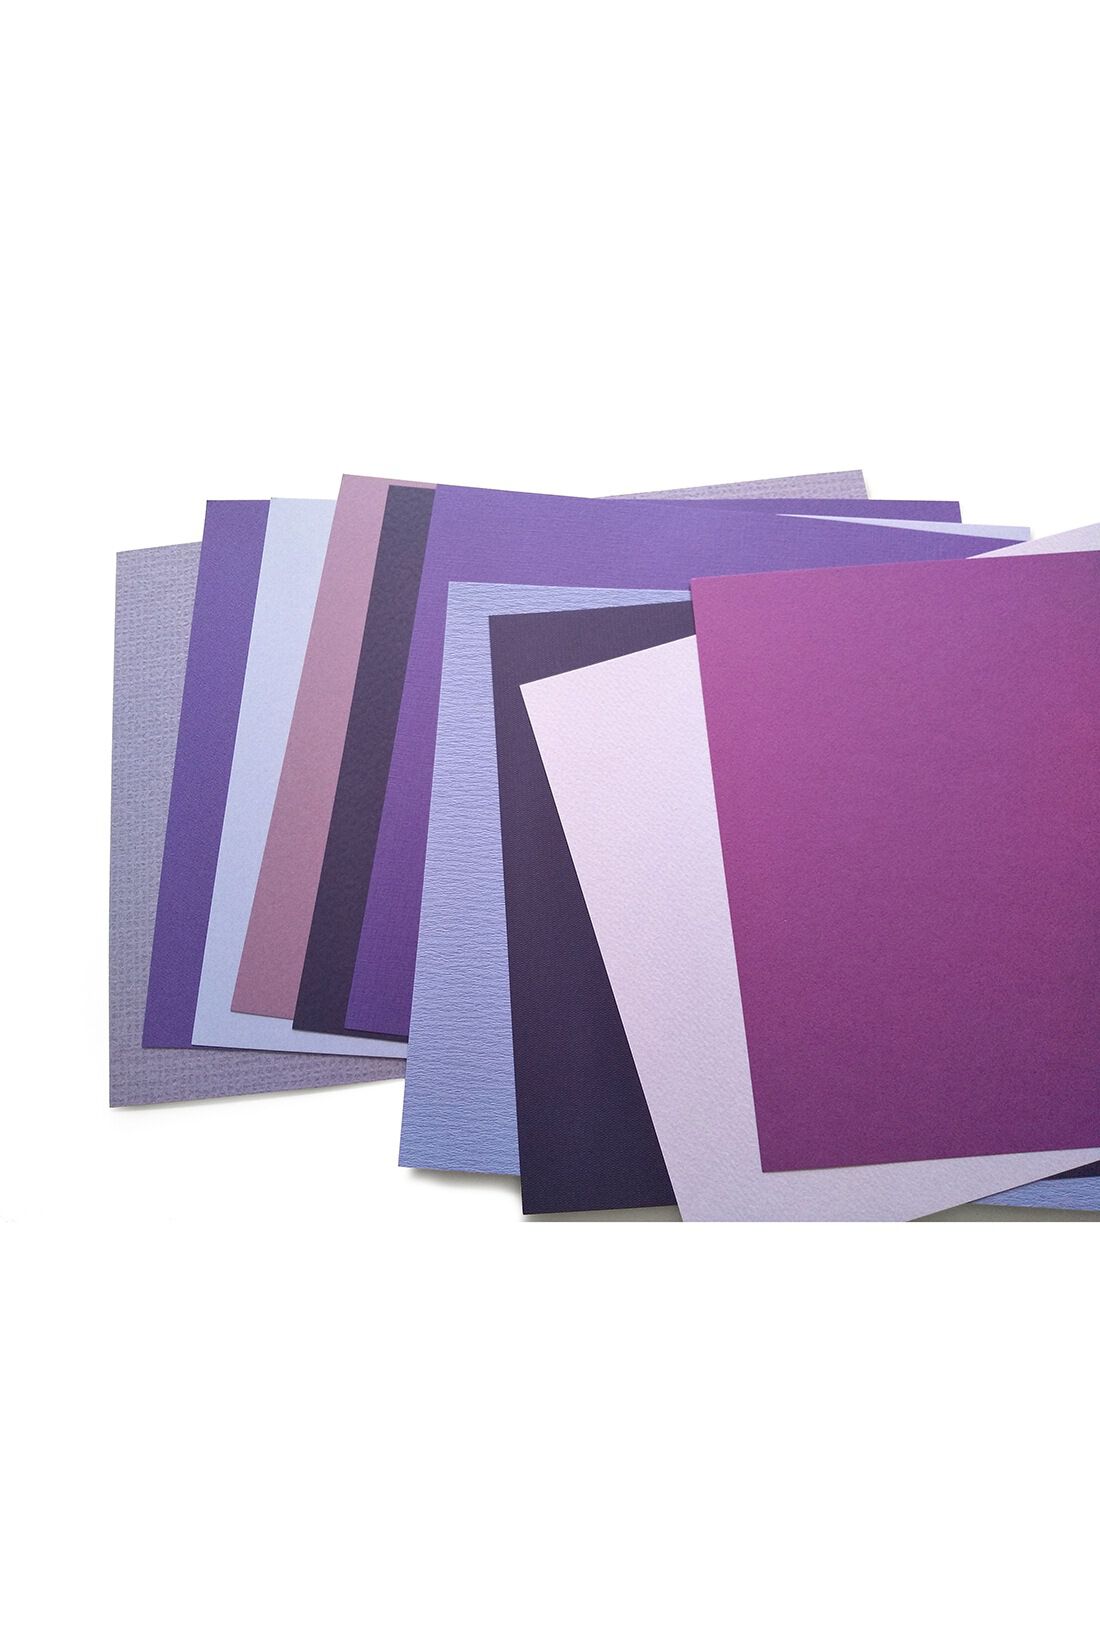 OSYAIRO|OSYAIRO 紙の専門商社竹尾が選ぶ　色を楽しむ紙セットの会〈紫〉|幅広い「紫」を楽しんでいただけます。